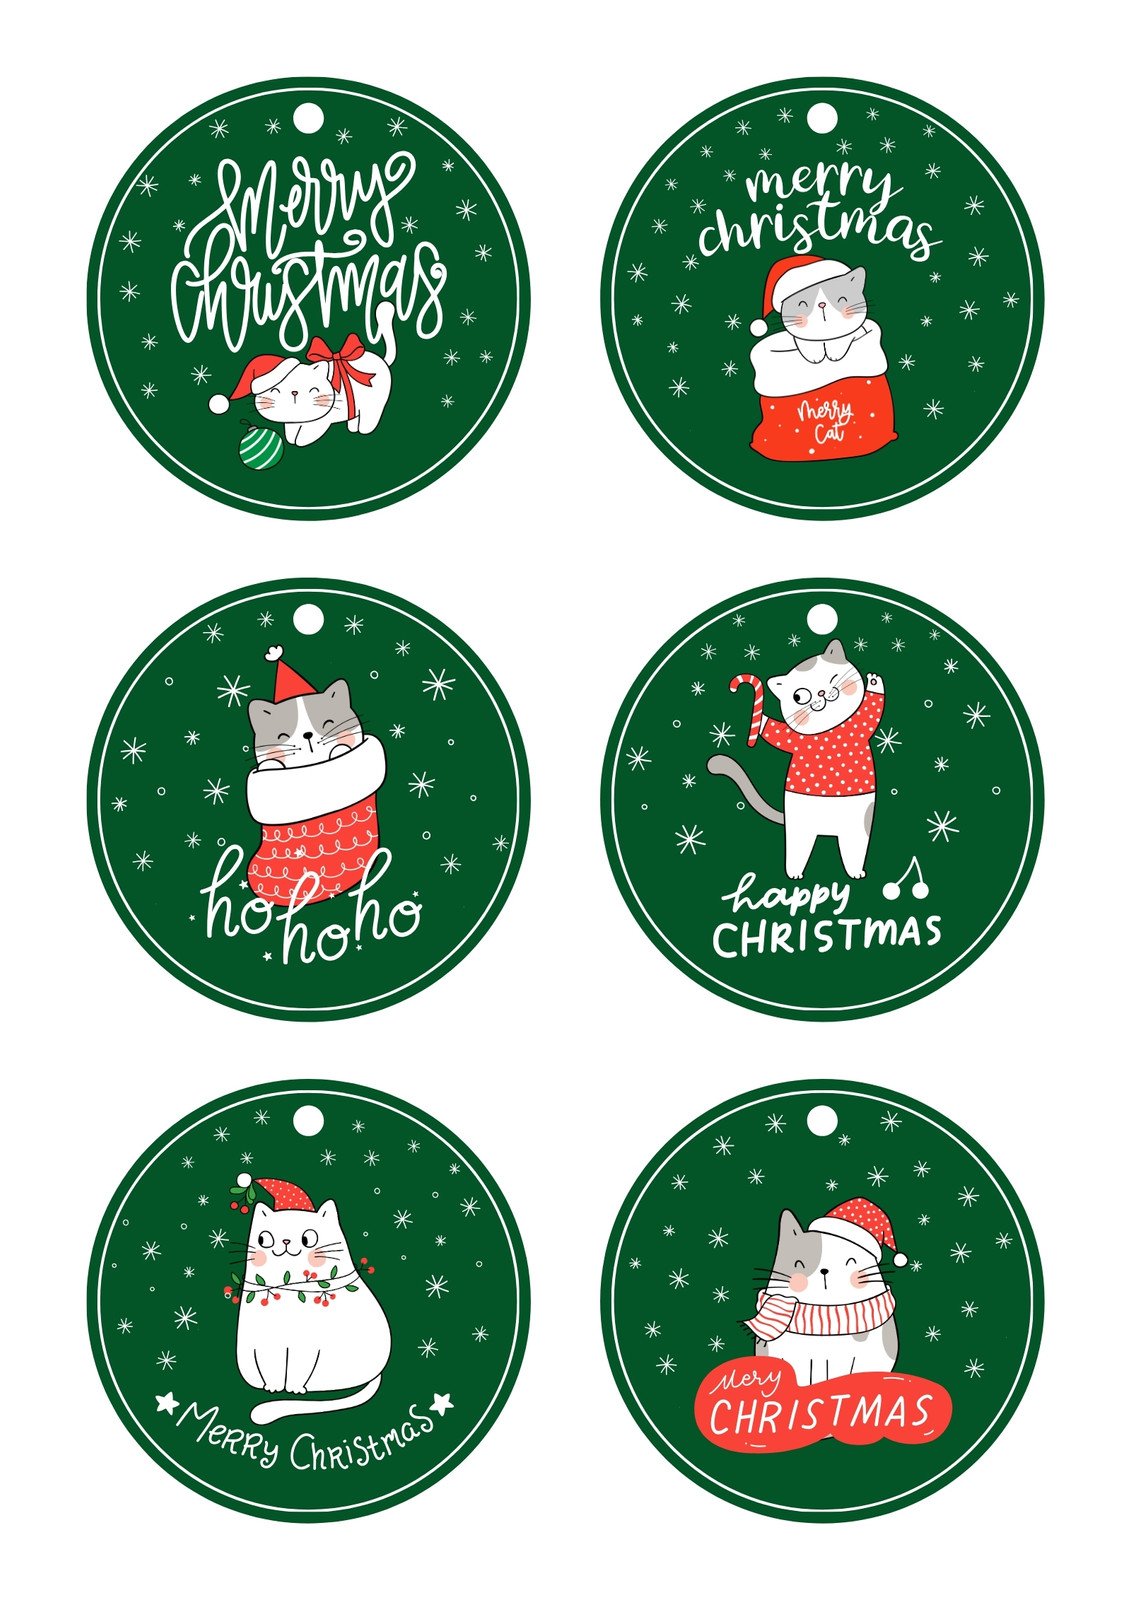 Cutesy Christmas Printable Gift Tags